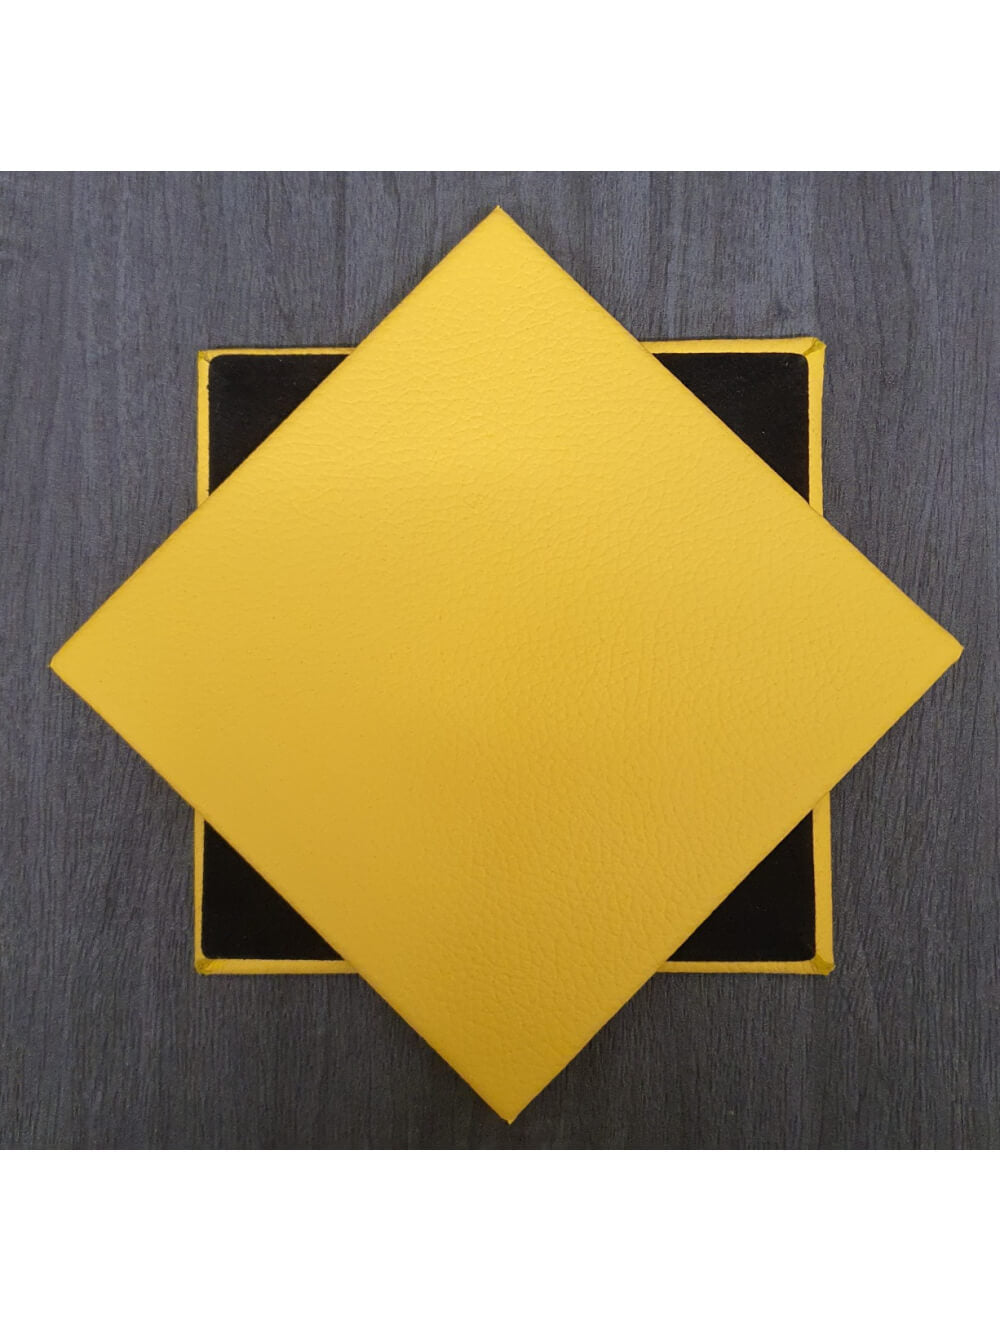 Yellow Shelly Leather Coaster- 10cm SQ (försäljningsartikel)